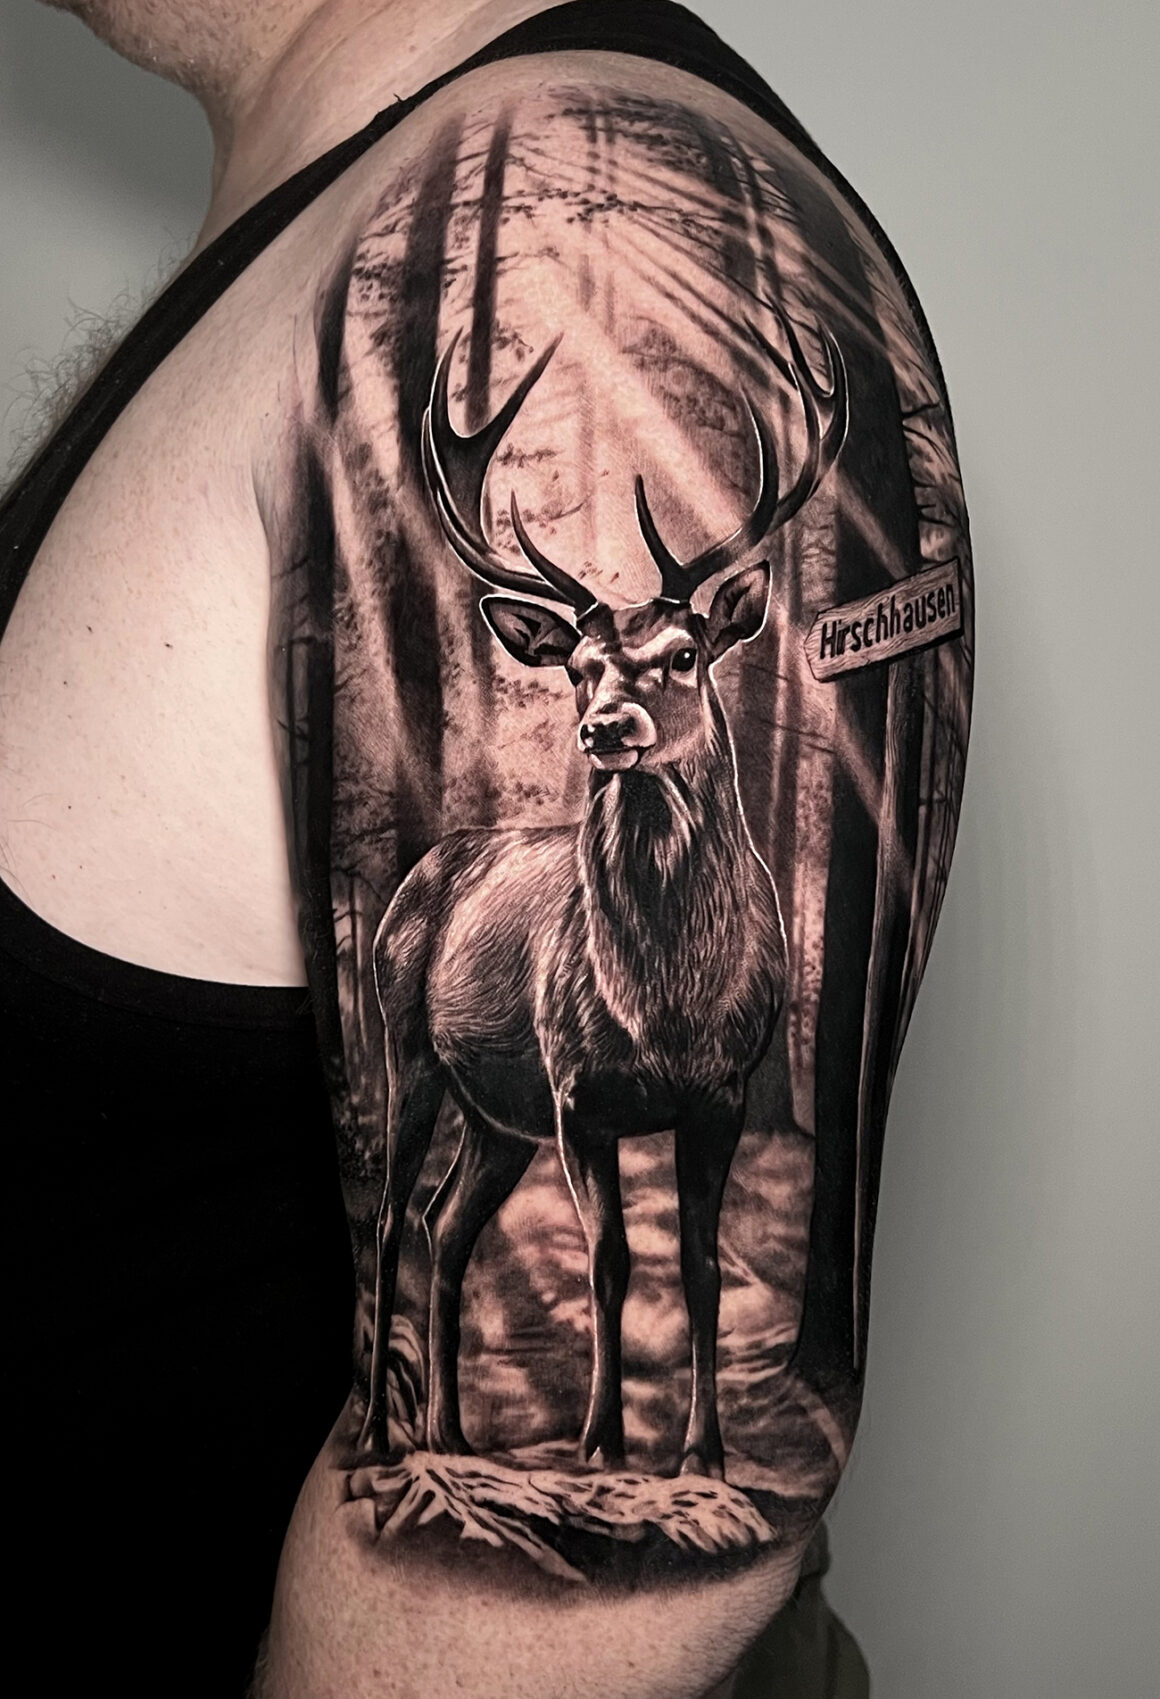 Tattoo by Andrey, German Skull Tattoo, @skulltattoosbadvilbel